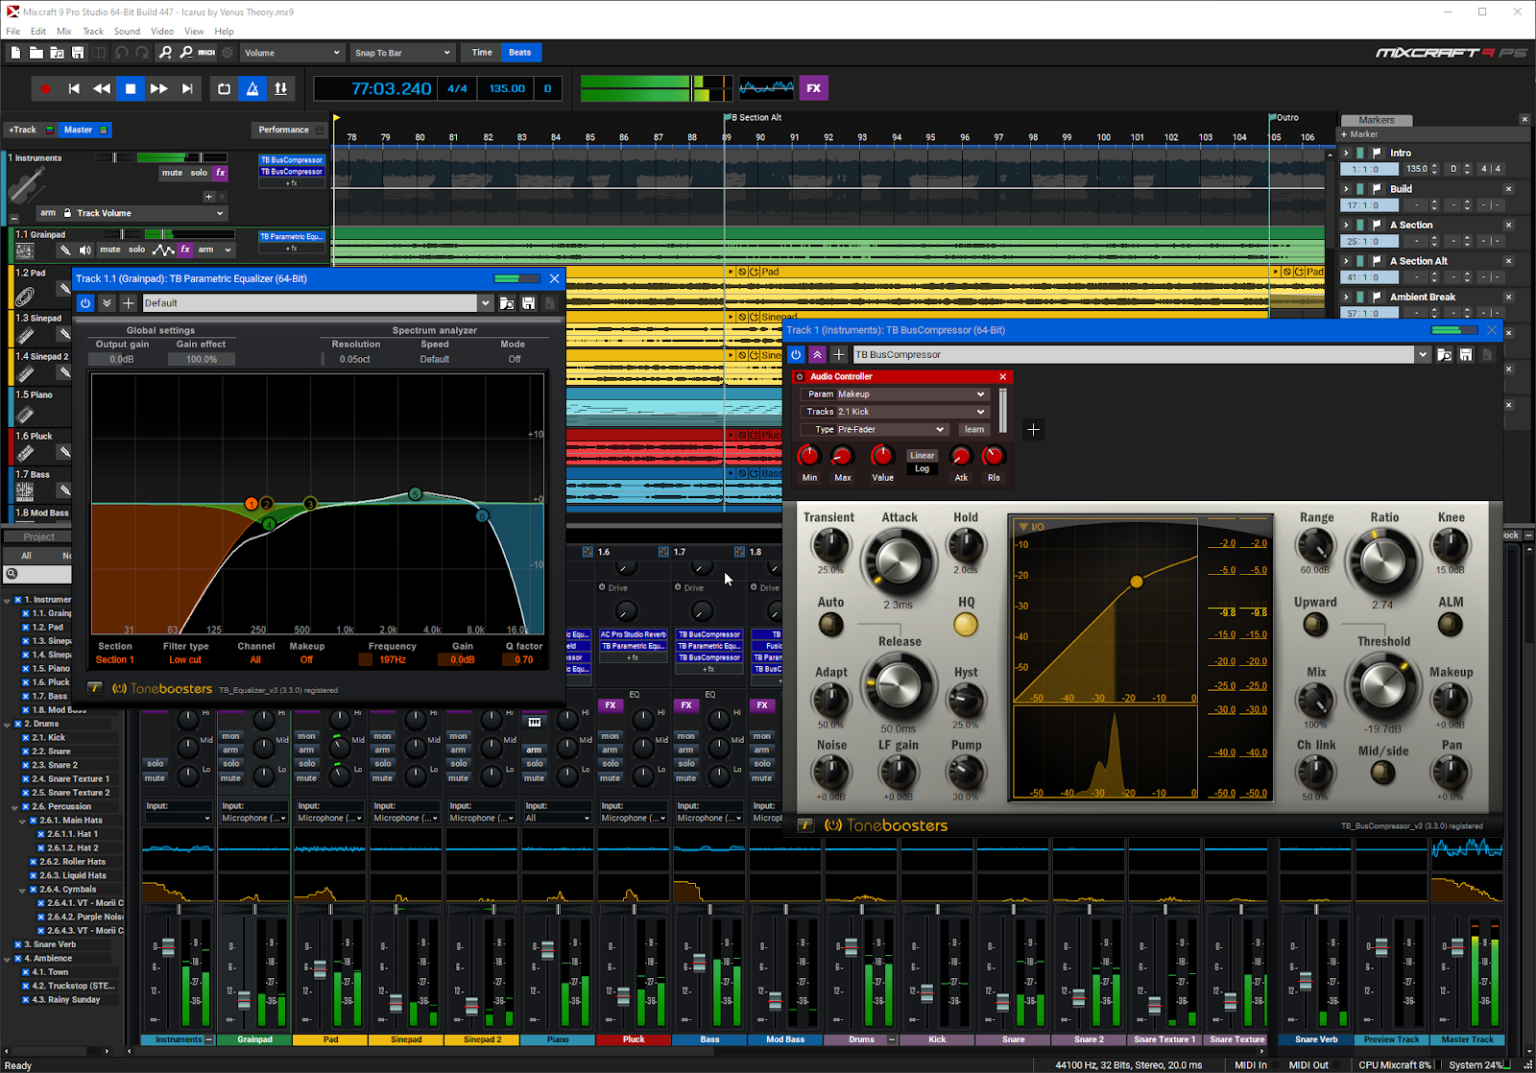 acoustica mixcraft pro studio 9.0